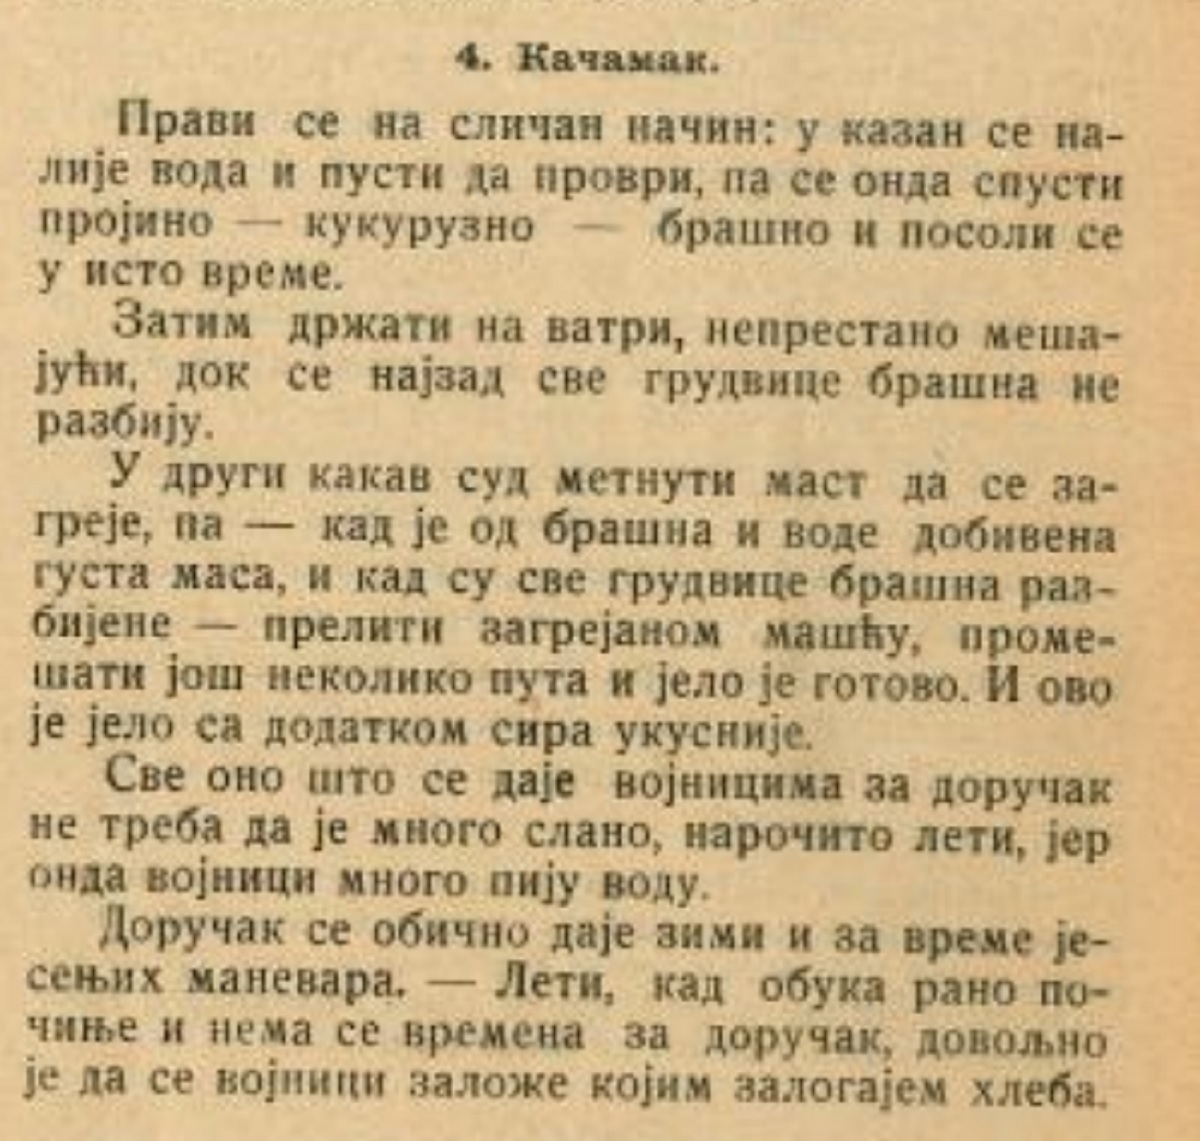 Recept za kačamak sa Solunskog fronta - 1918. godina